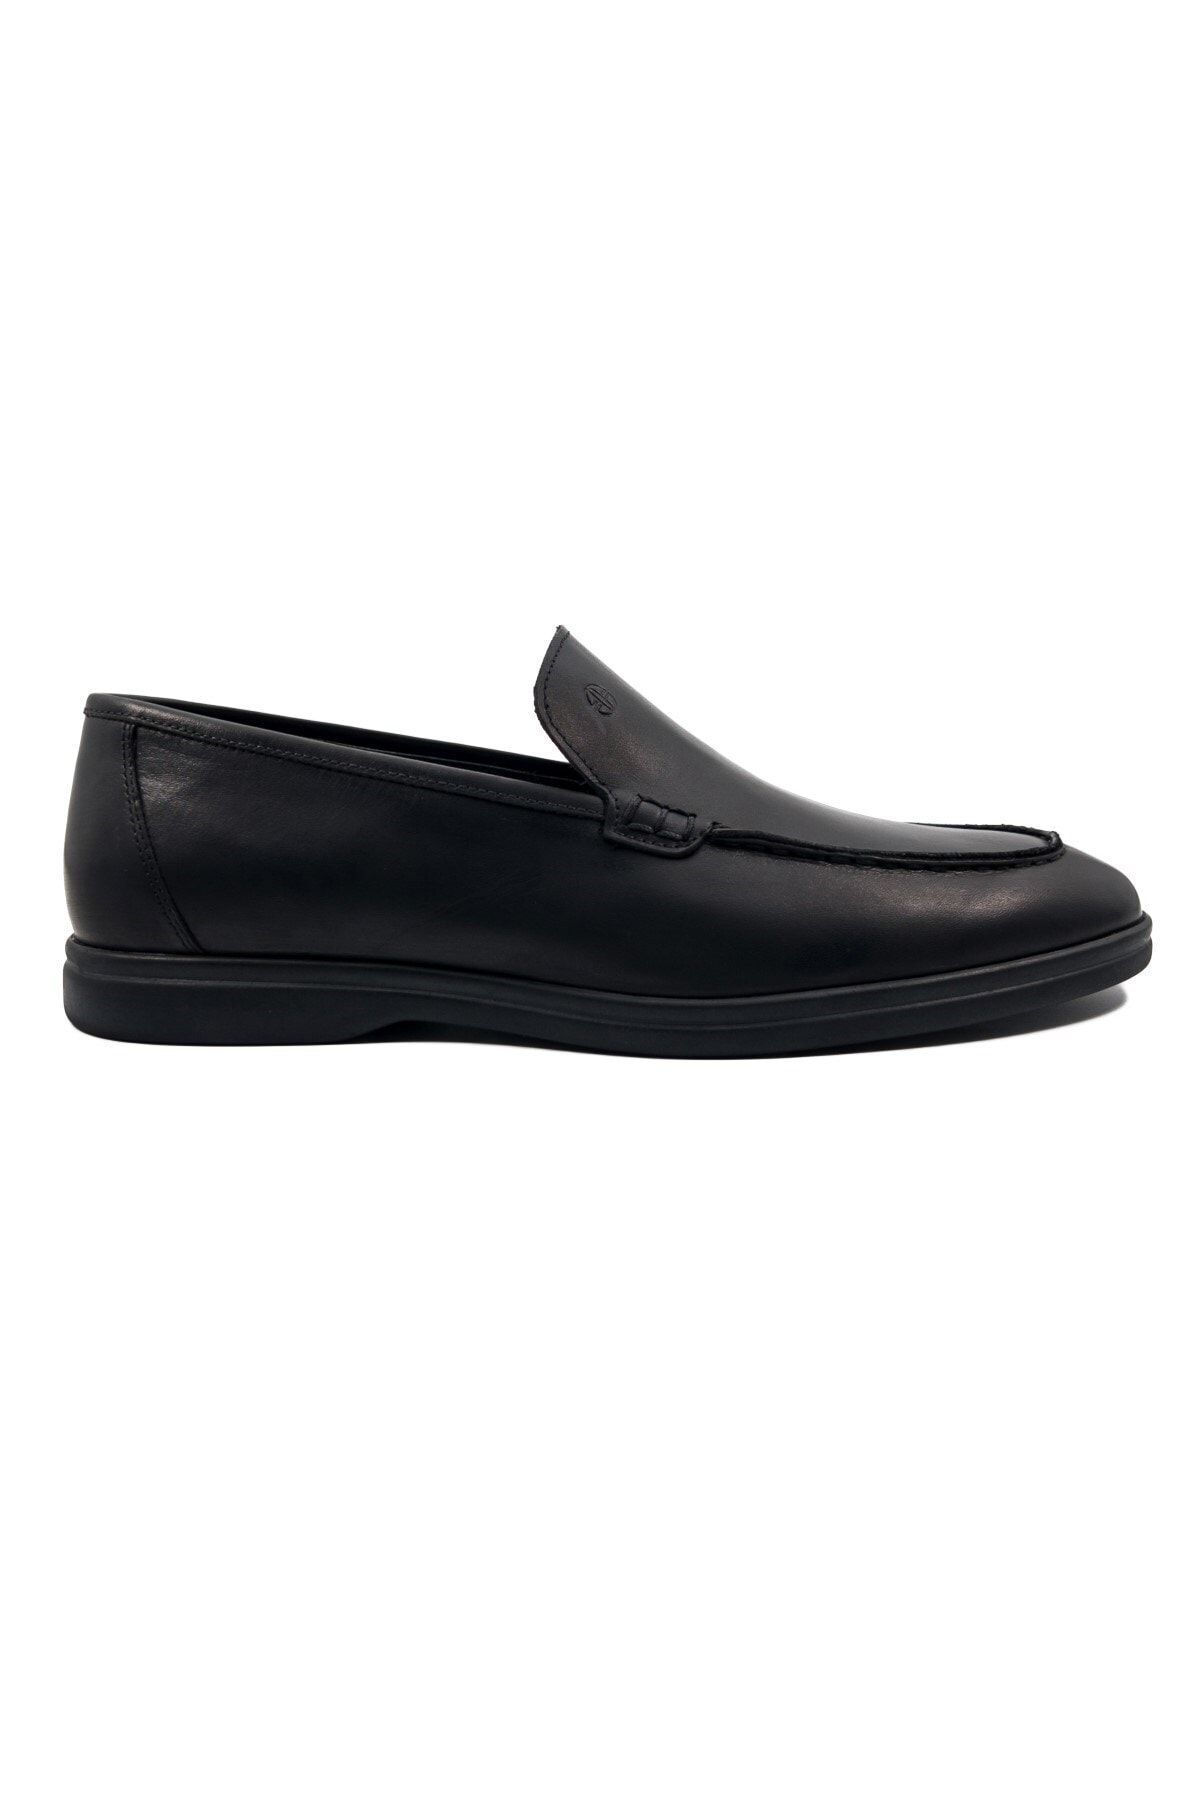 TEZCAN KUNDURA Allegro Hakiki Deri Bağcıksız Loafer Siyah Erkek Ayakkabı